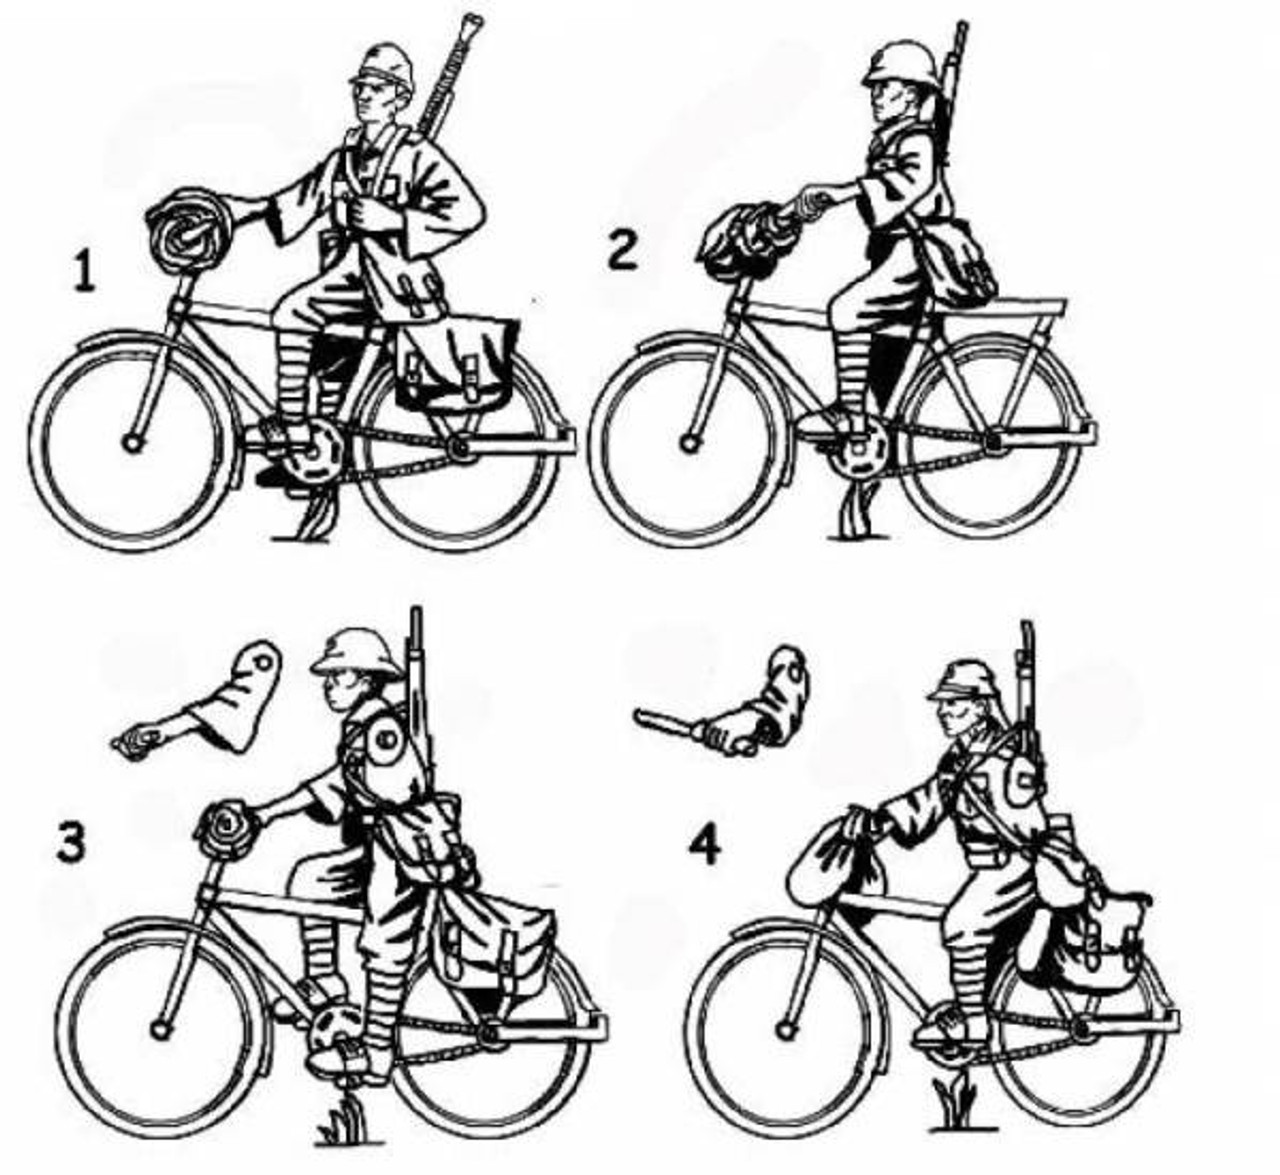 HAT 8278 WW2 Japanese Bicylists 1:72 Scale Figures